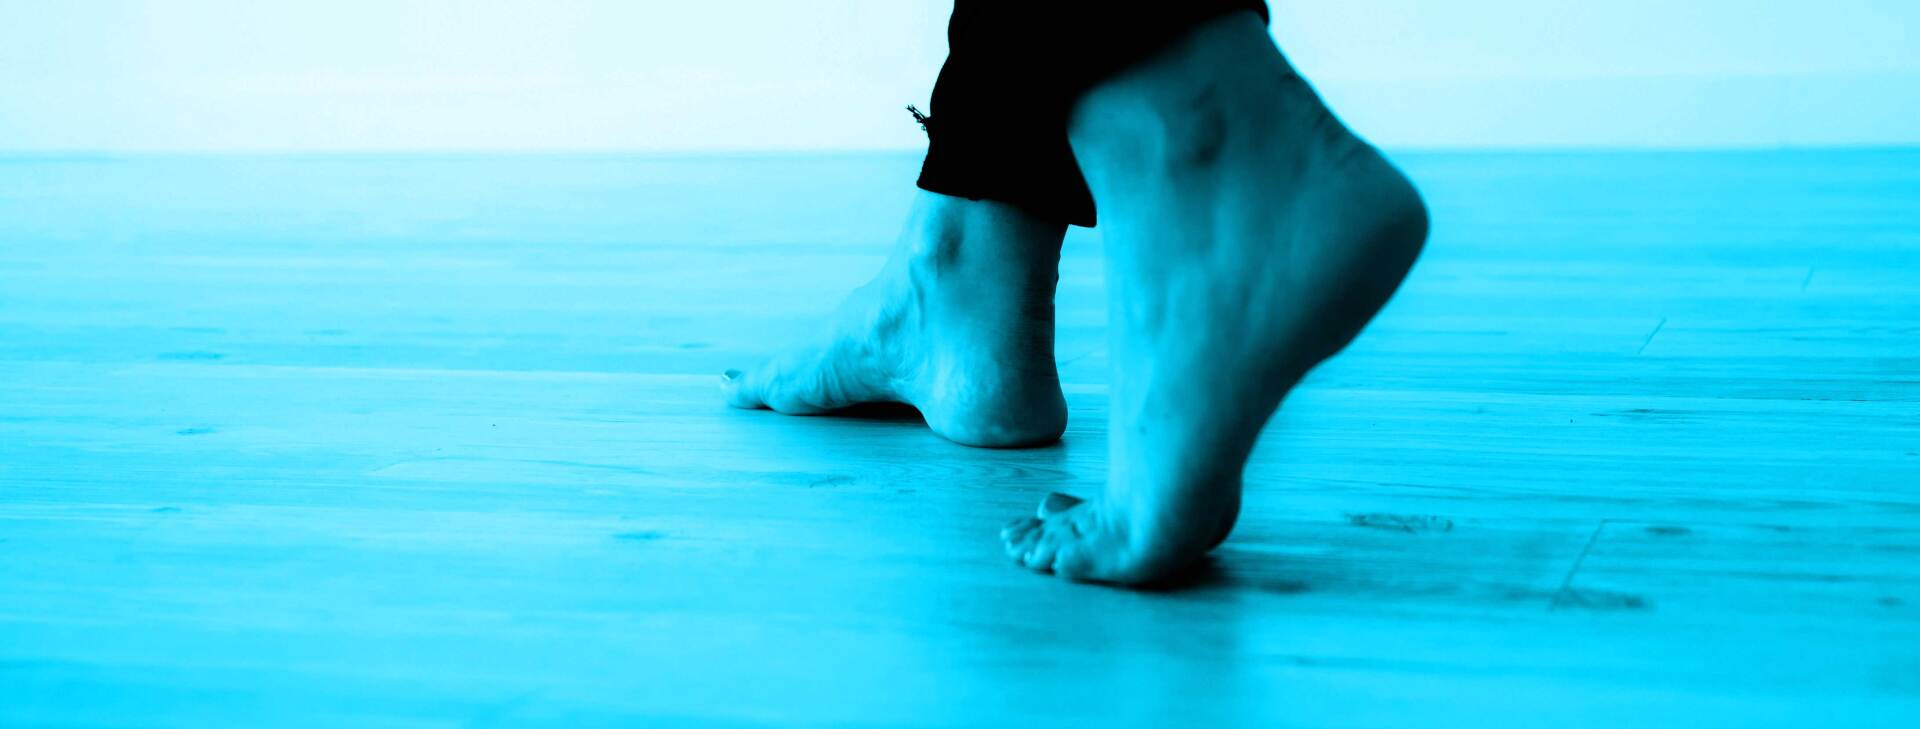 Une personne marchant pieds nus sur un sol agréablement chauffée